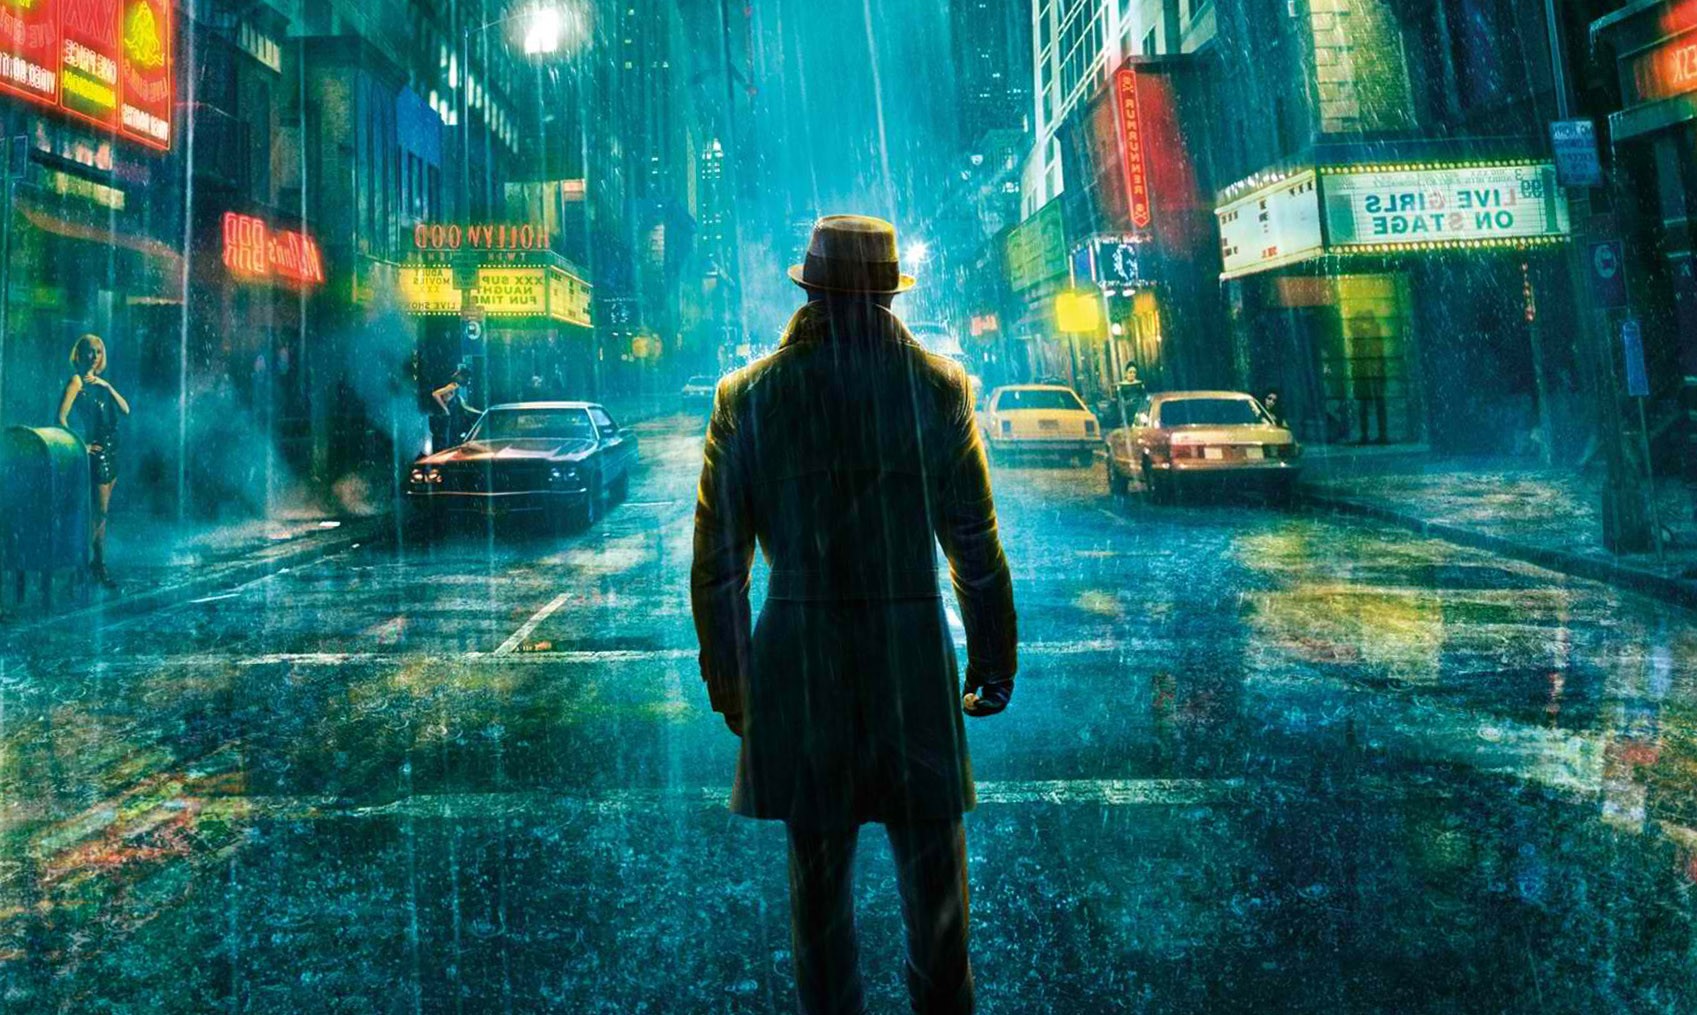 ヒーロー映画の壁紙,雨,市街地,闇,通り,デジタル合成